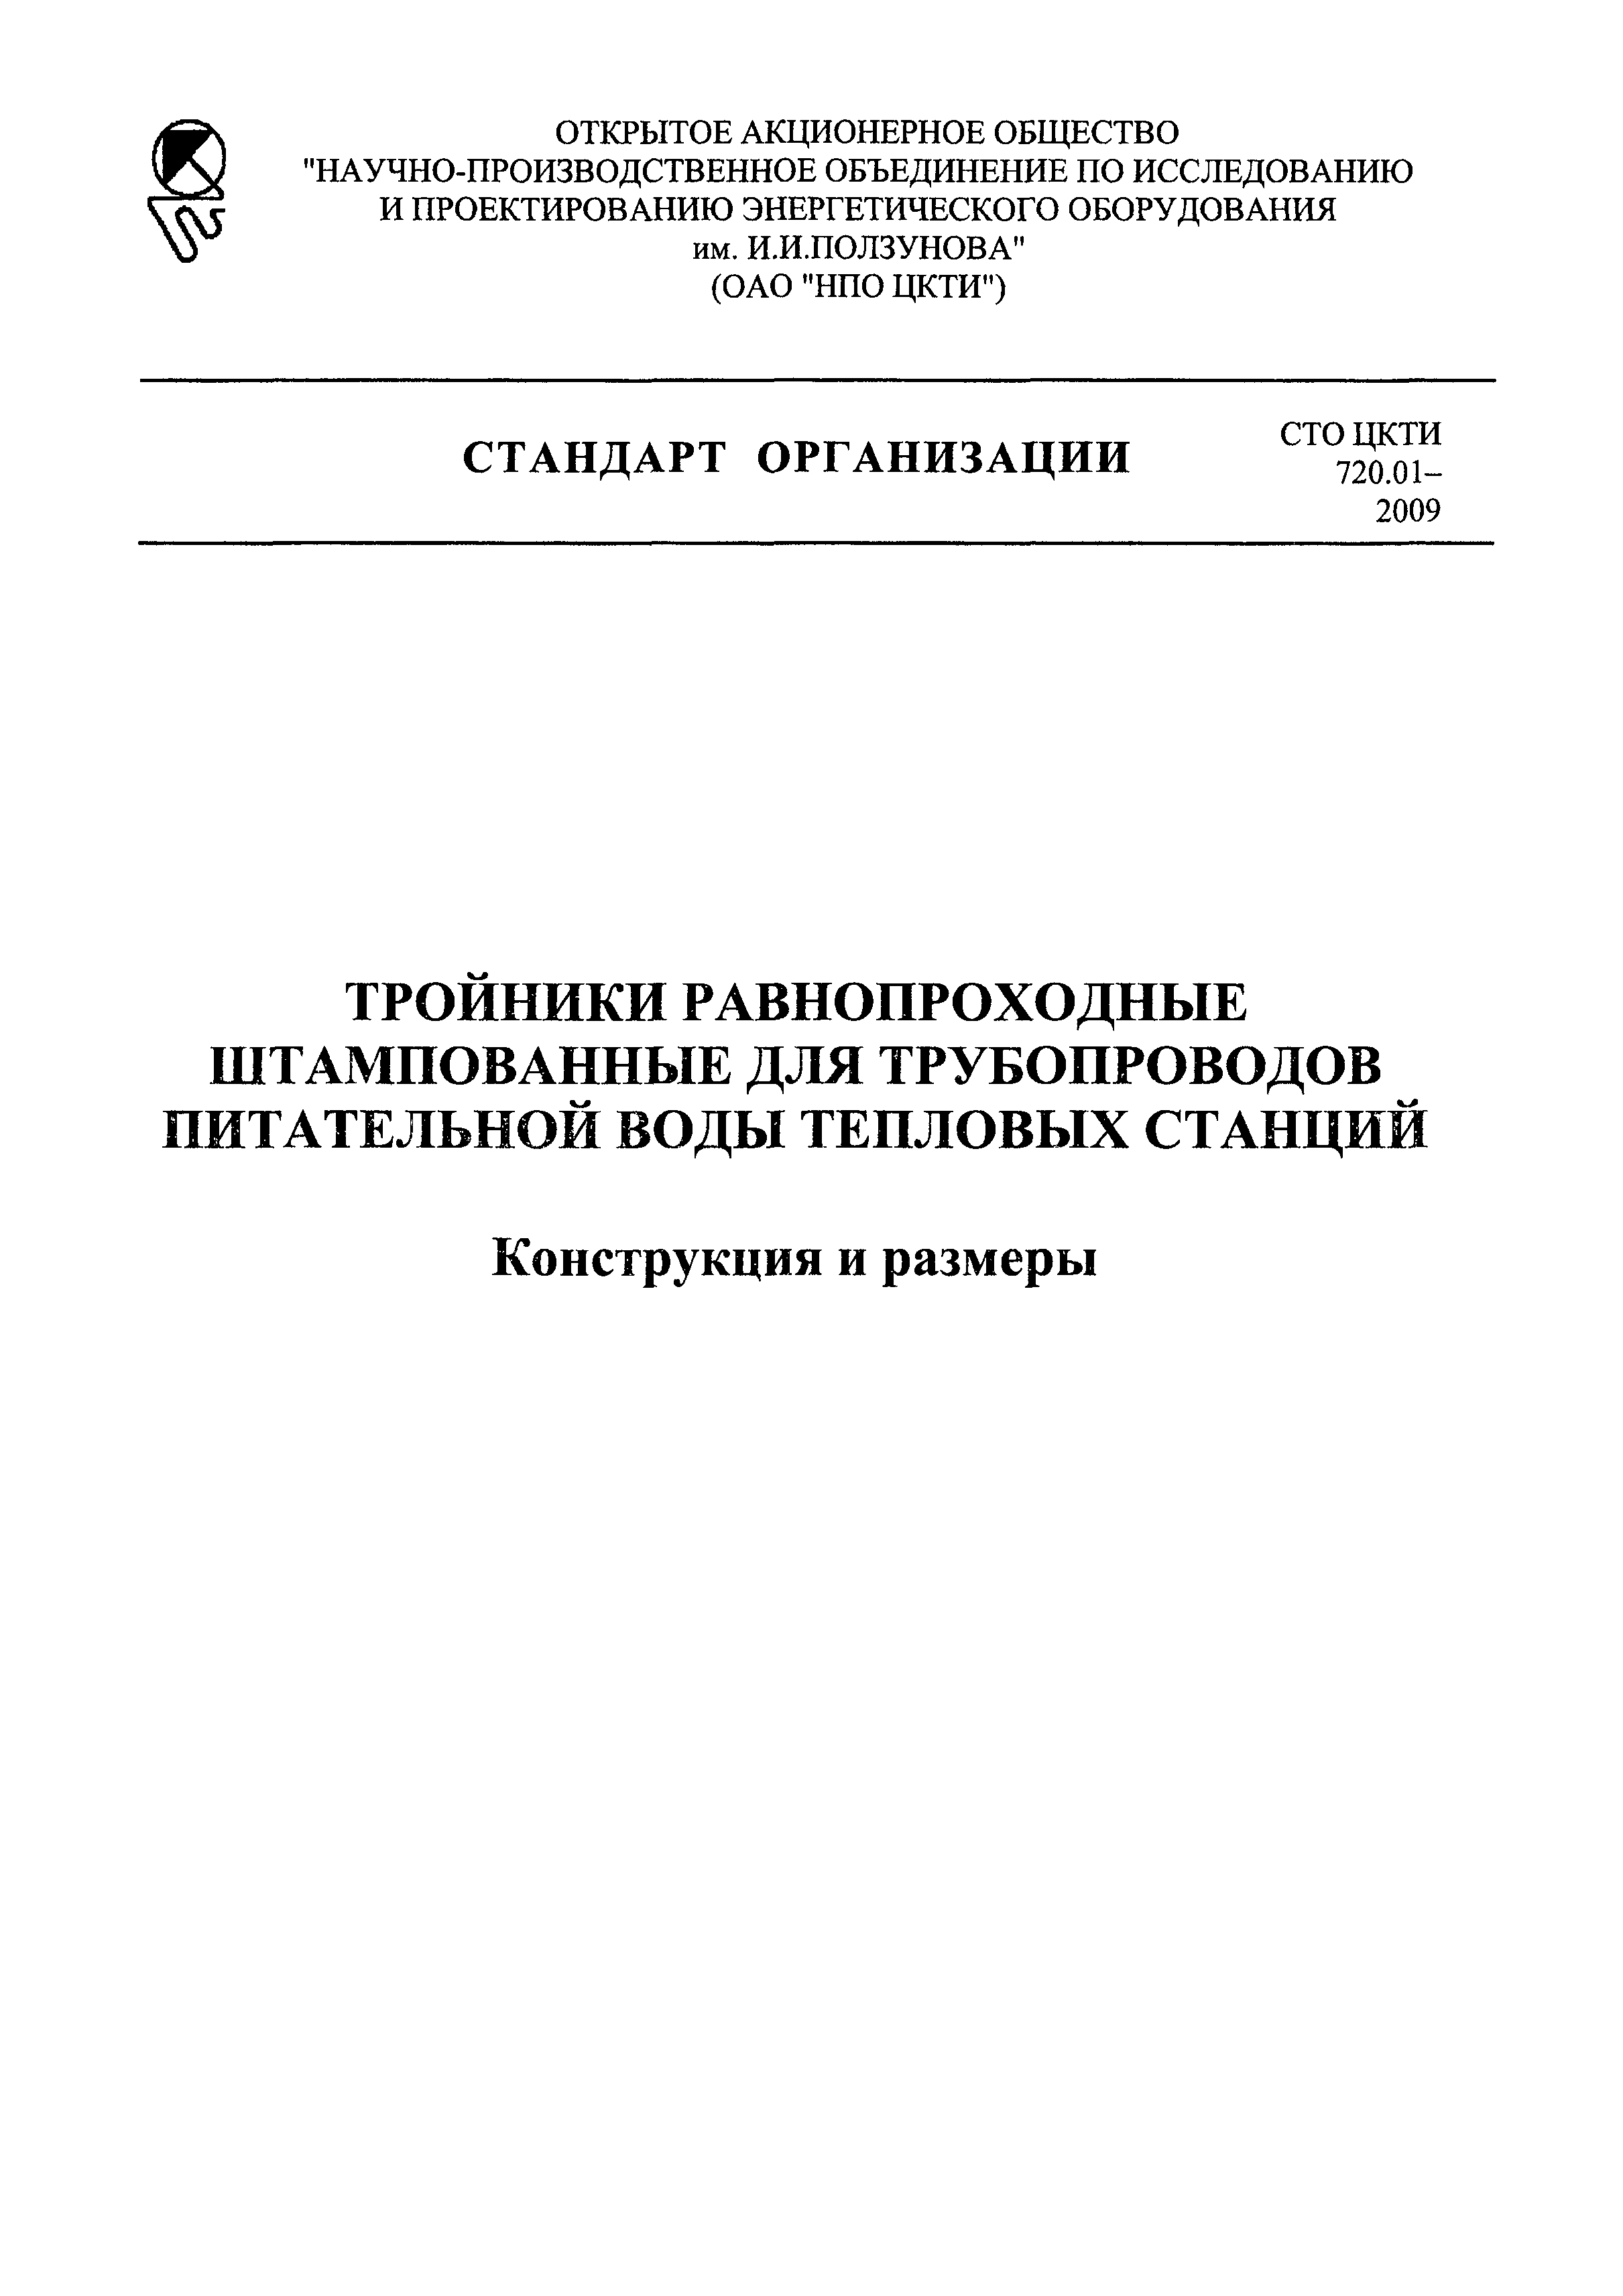 СТО ЦКТИ 720.01-2009